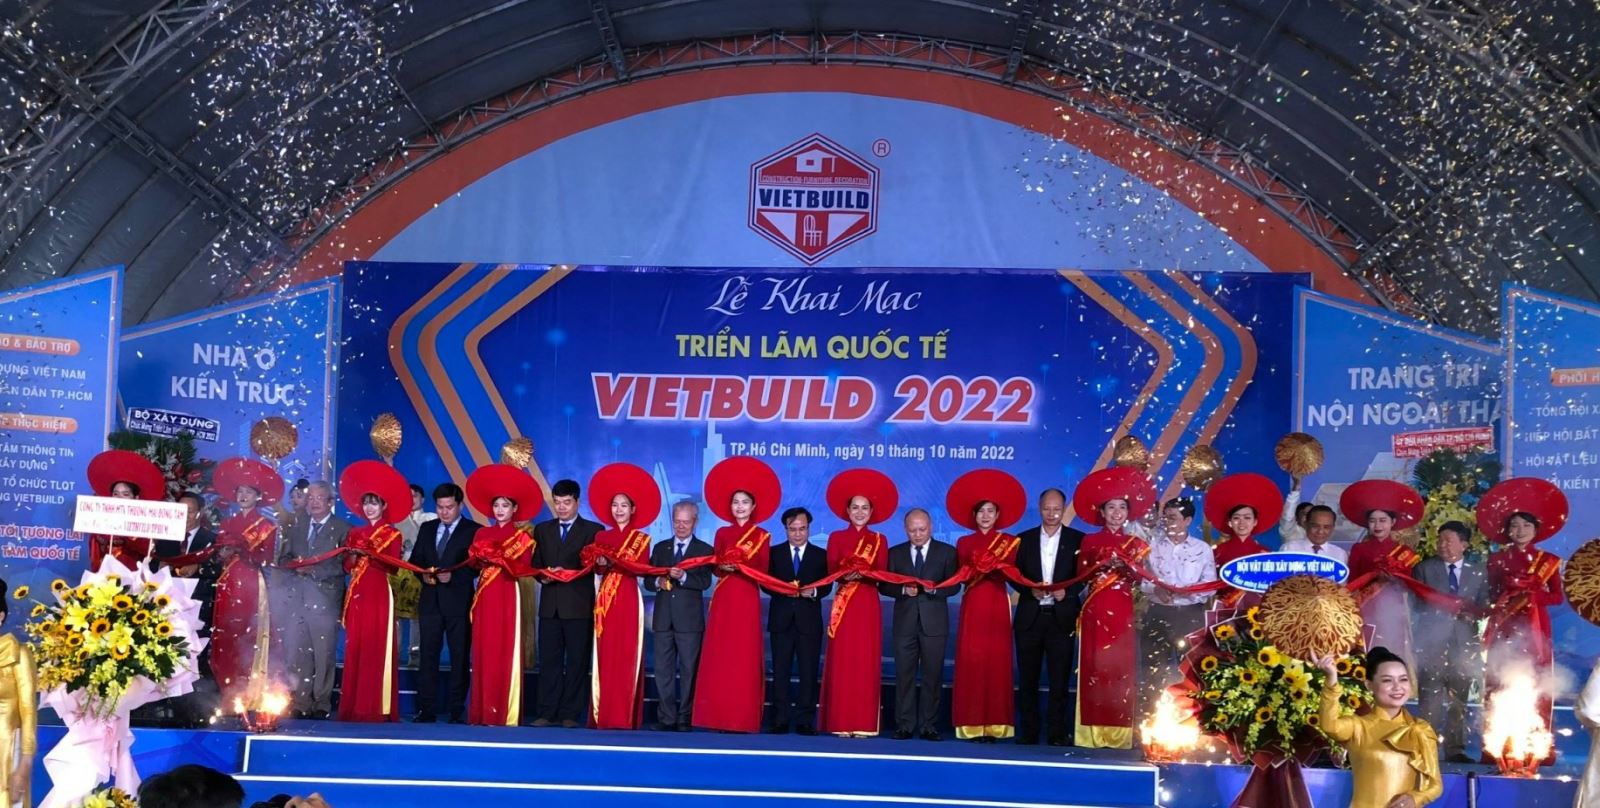 Ông Nguyễn Văn Sinh, Thứ trưởng Bộ Xây dựng, Trưởng ban chỉ đạoTriển lãm Quốc tế Vietbuild  (hình đứng thứ 12 từ trái qua) cắt băng khai mạc Triển lãm.